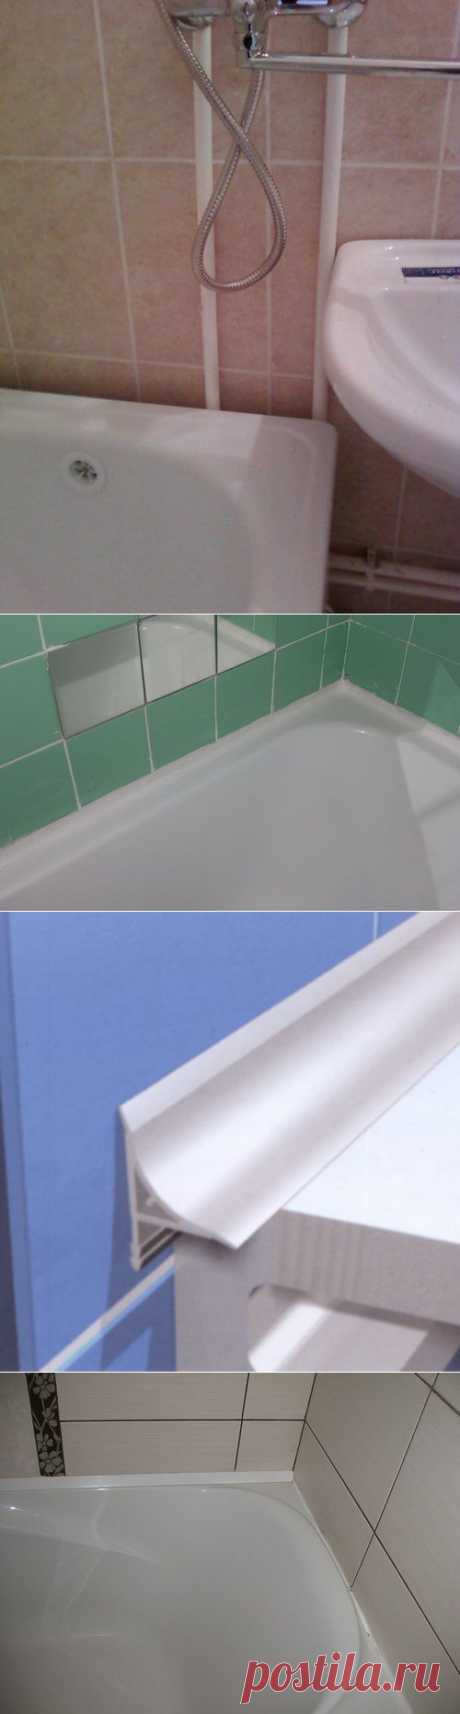 Как заделать щель между ванной и стеной: решения для разных размеров щелей